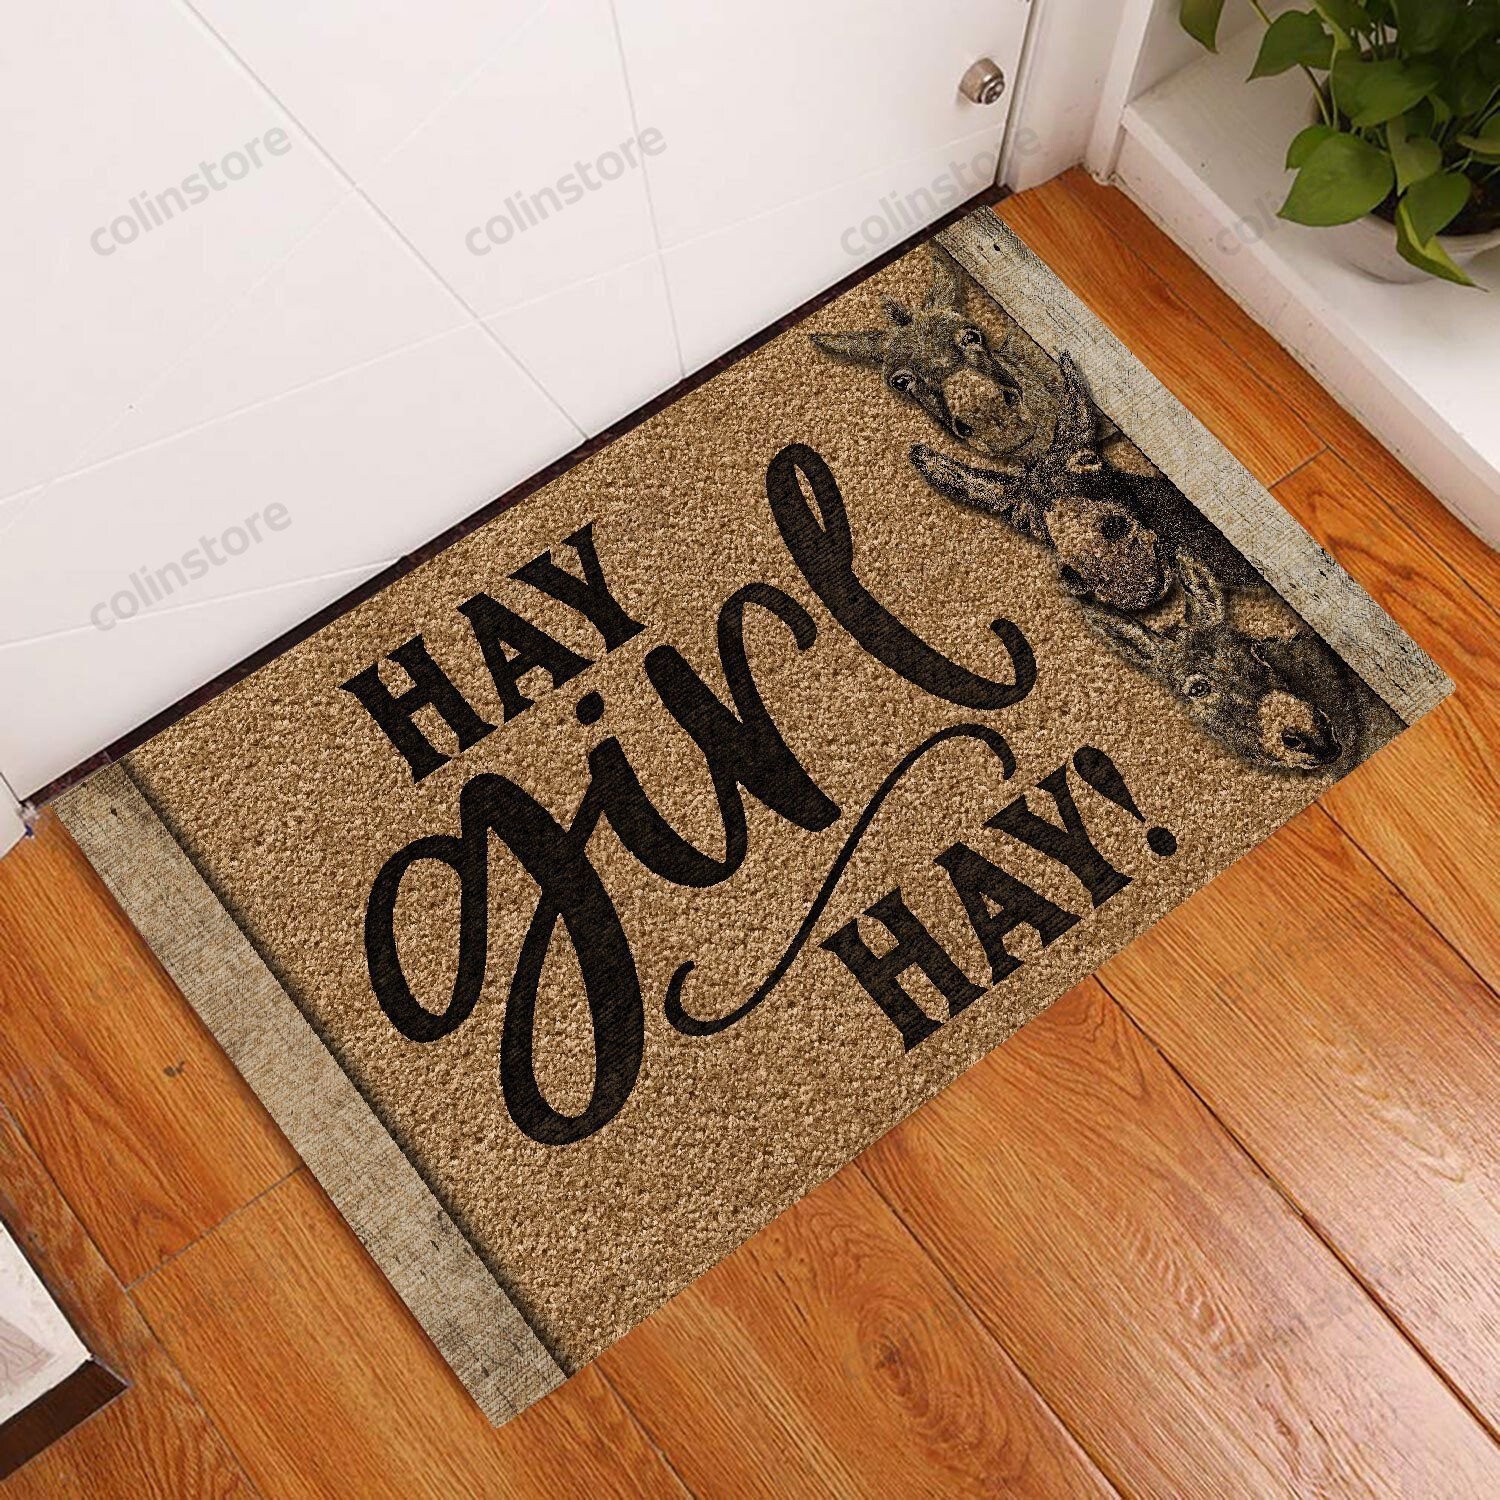 Hay Girl Hay Donkey Doormat Welcome Mat